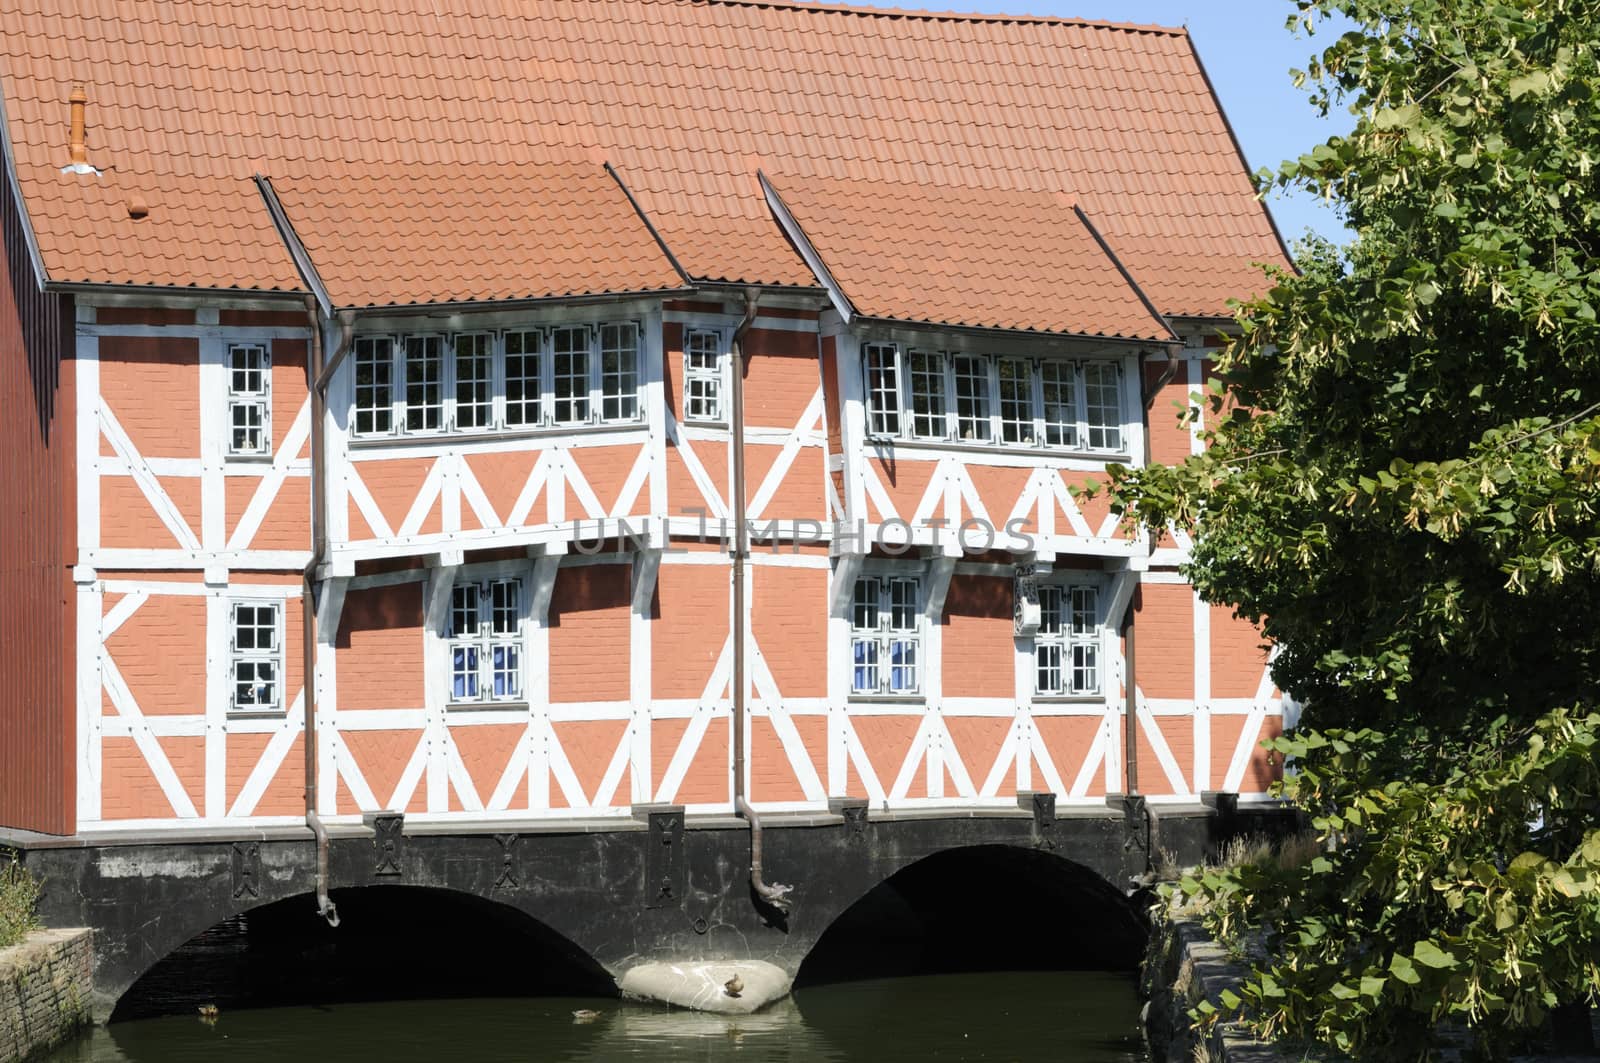 Half-timbered house called Gewoelbe, Wismar, Germany.